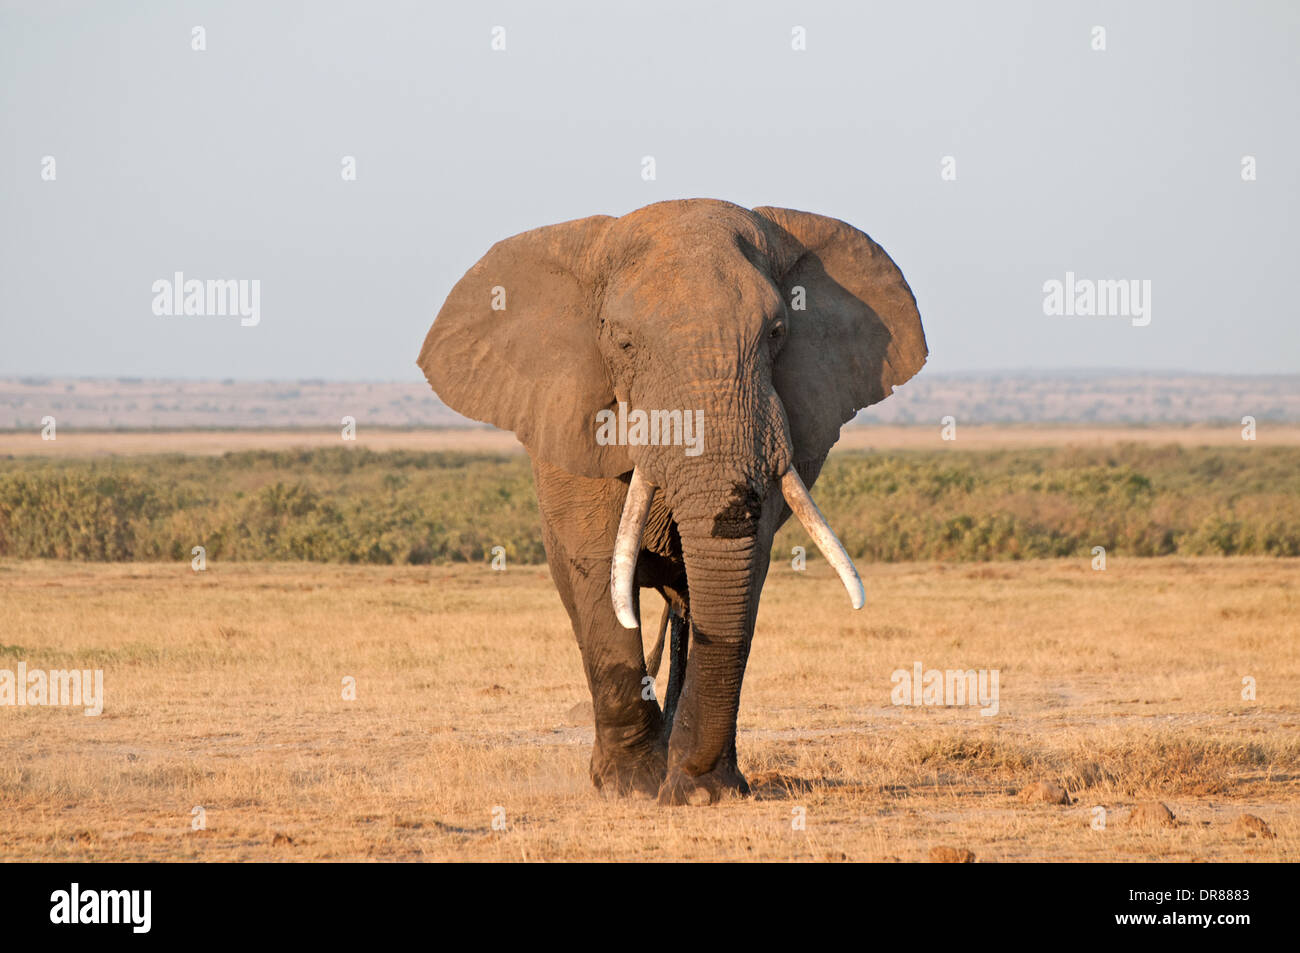 Avec les oreilles d'éléphants mâles matures et tendue de bonnes défenses dans le Parc national Amboseli Kenya Afrique de l'Est Banque D'Images